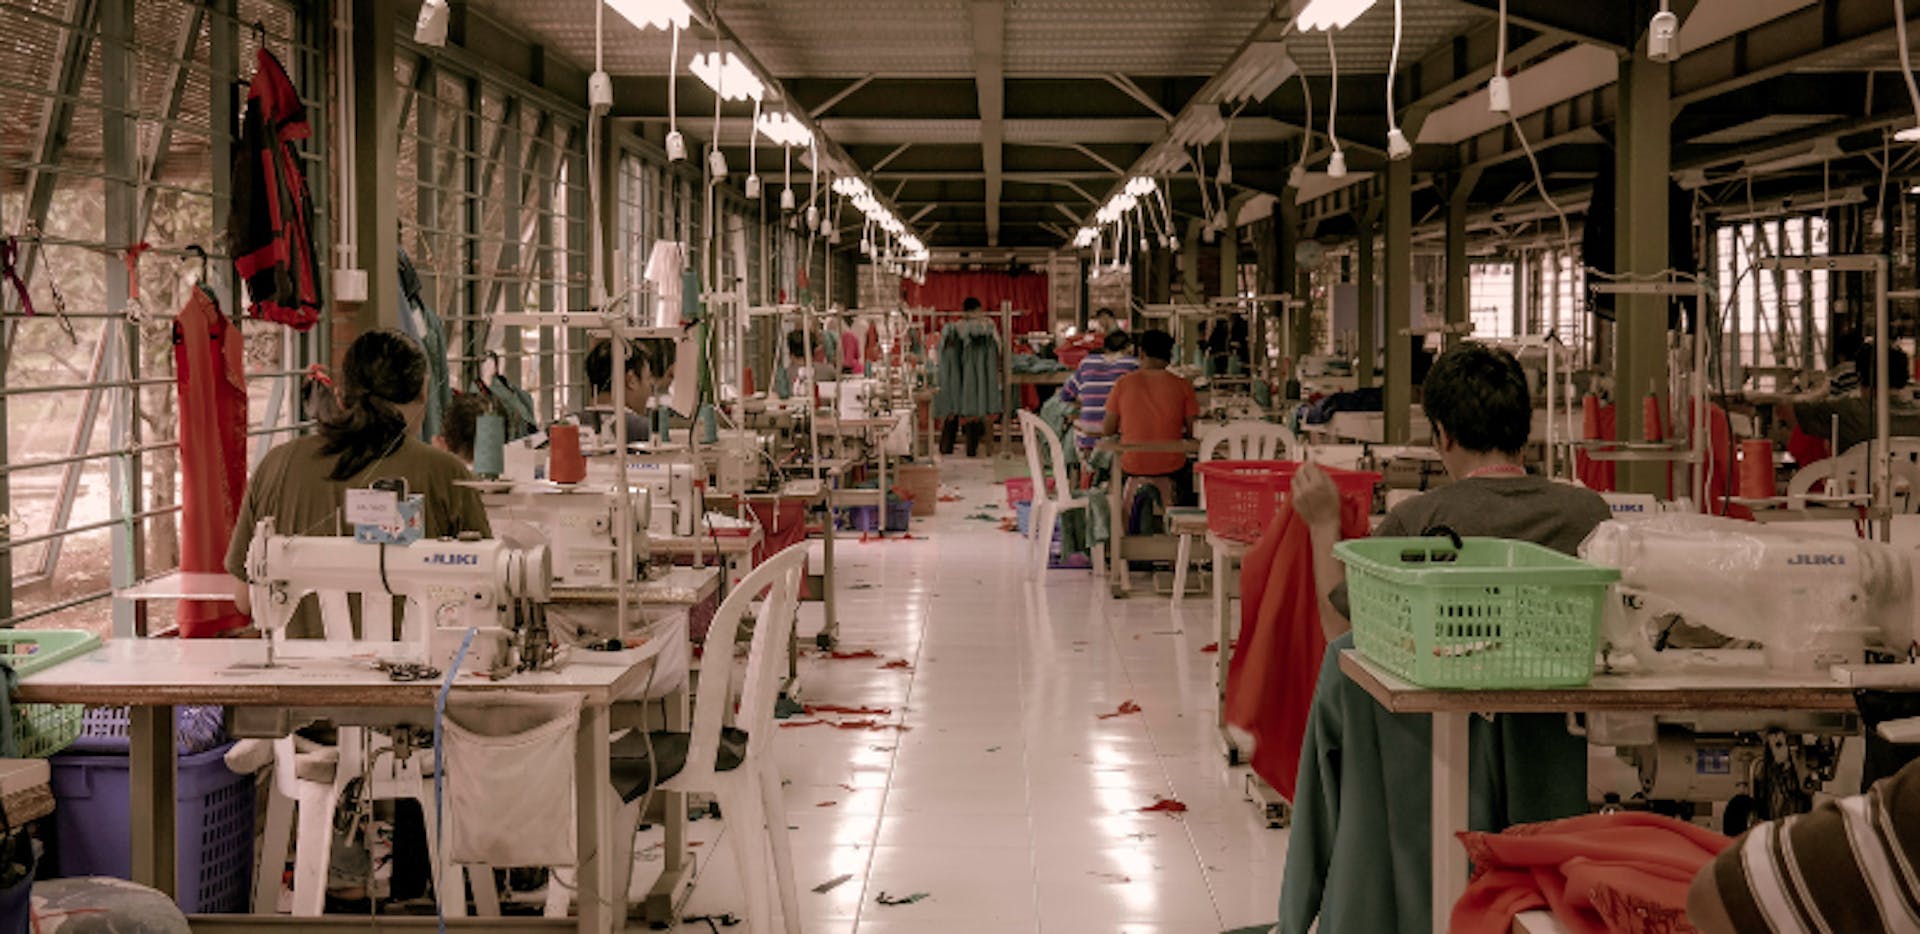 Personnes qui travaillent dans une usine textile